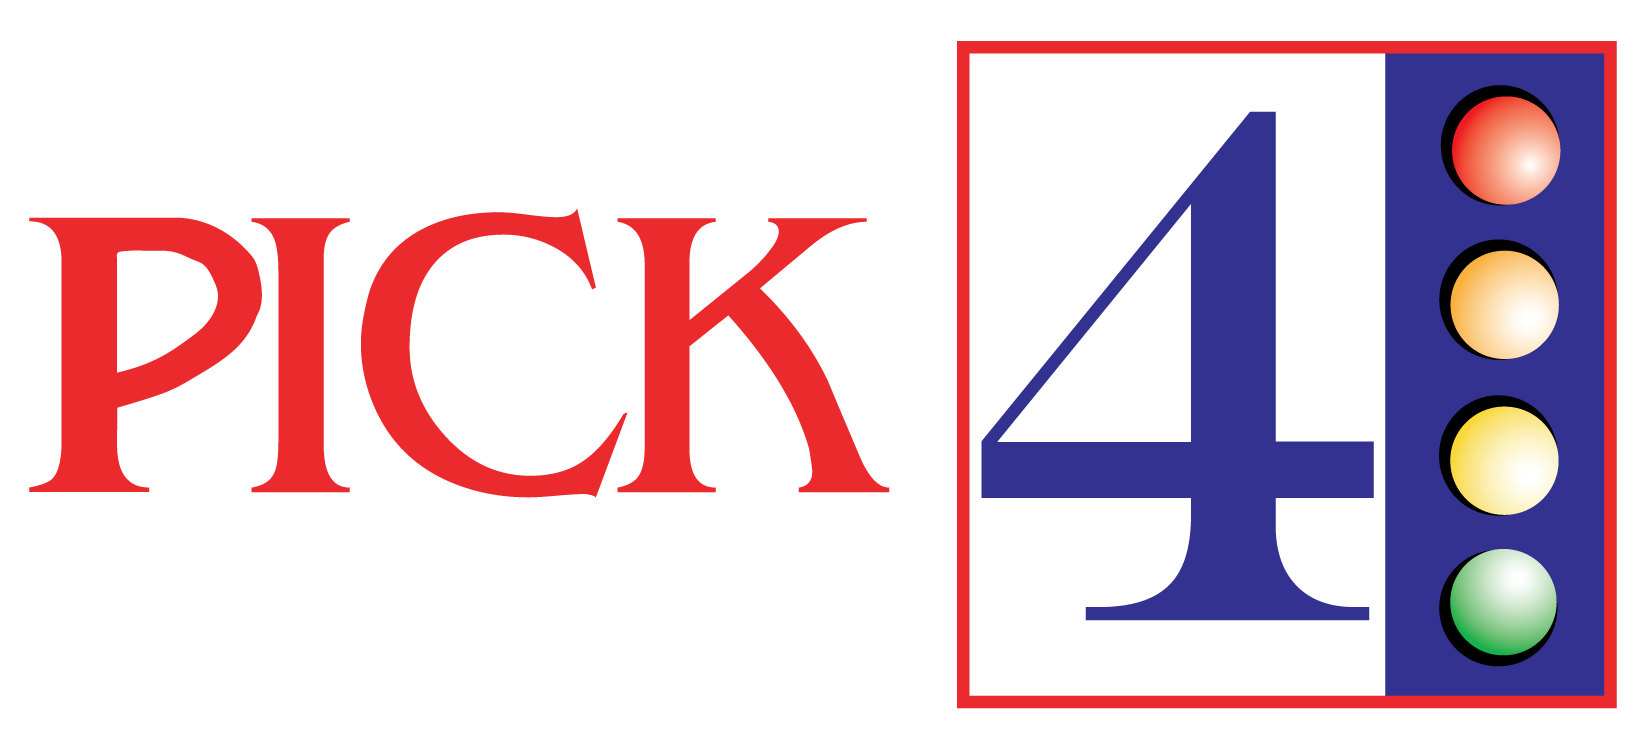 double-draw-logo